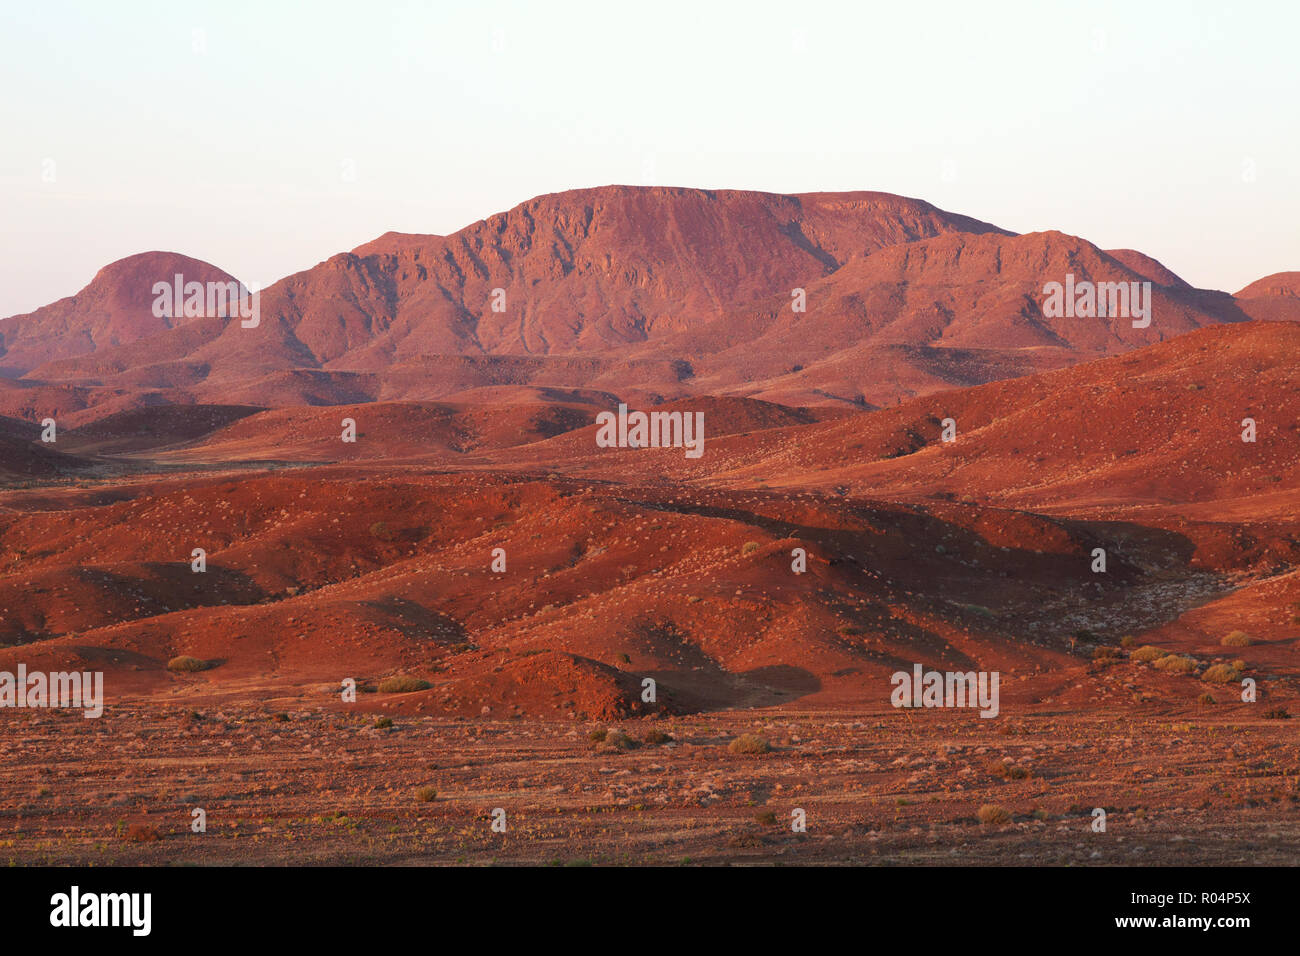 Namibia landscape - sunrise in the mountains, Damaraland, Namibia Africa Stock Photo